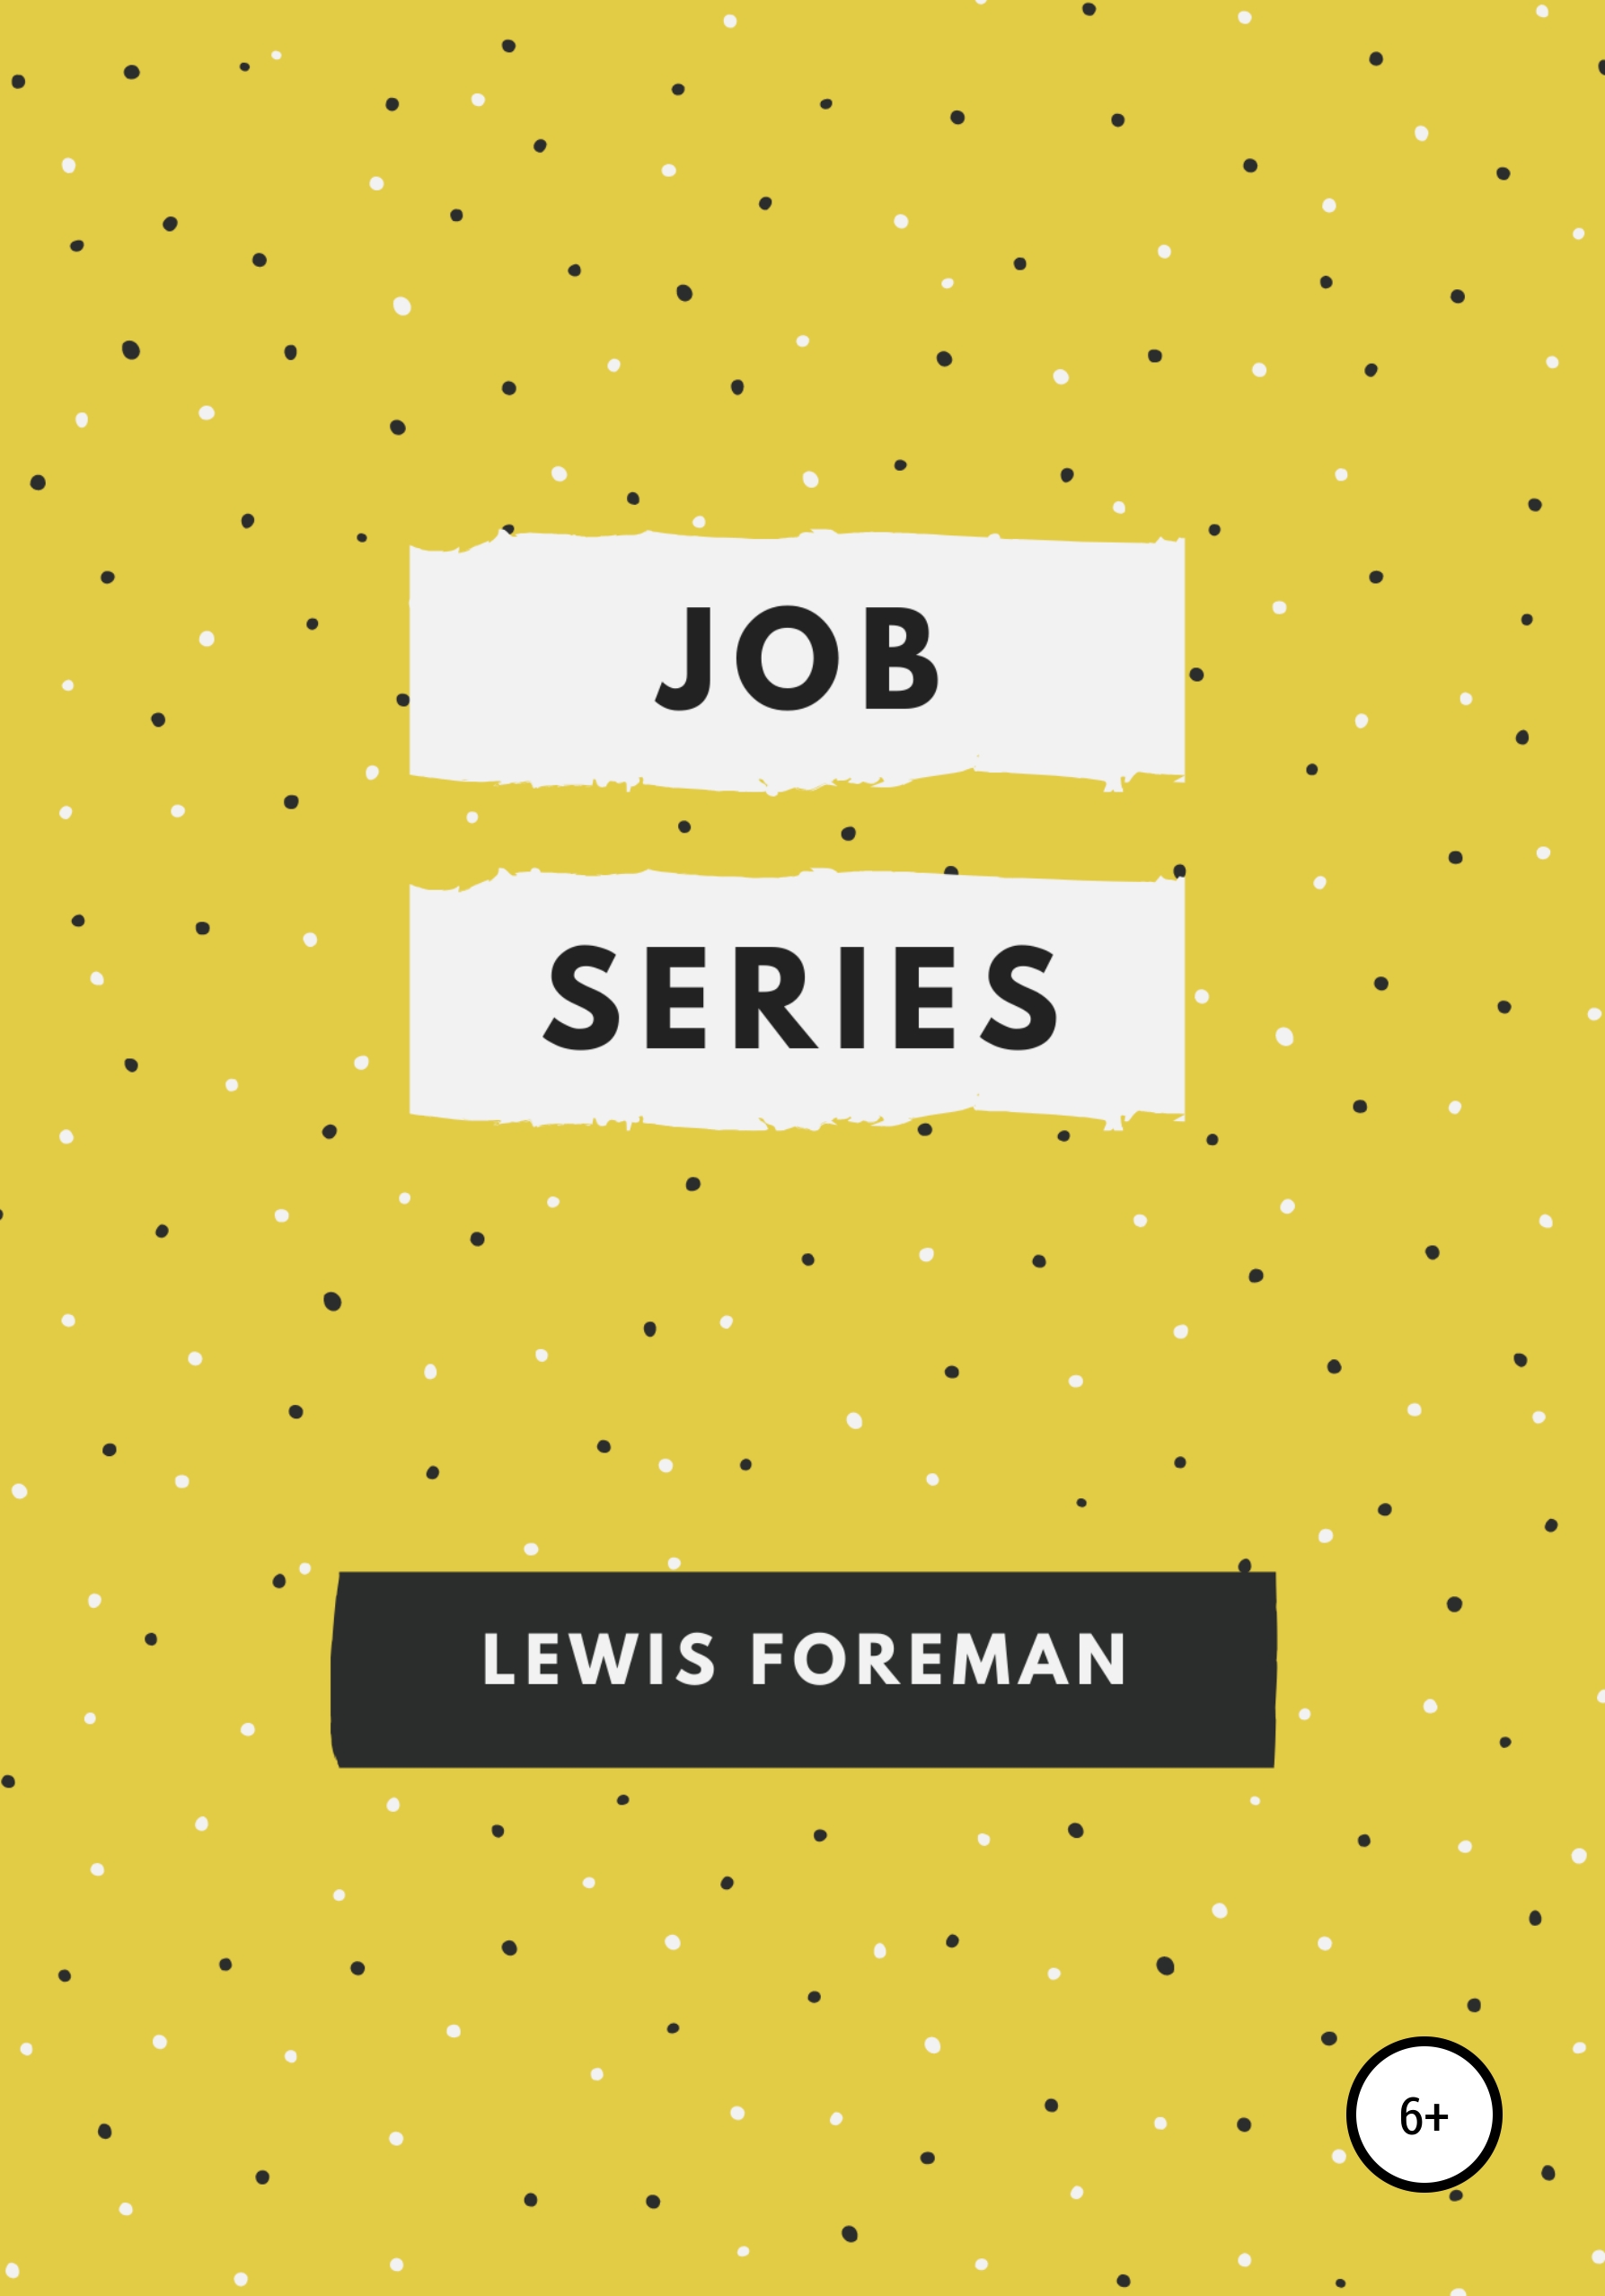 Книга Job Series. Full из серии , созданная Lewis Foreman, может относится к жанру Зарубежная образовательная литература. Стоимость электронной книги Job Series. Full с идентификатором 40496229 составляет 199.00 руб.